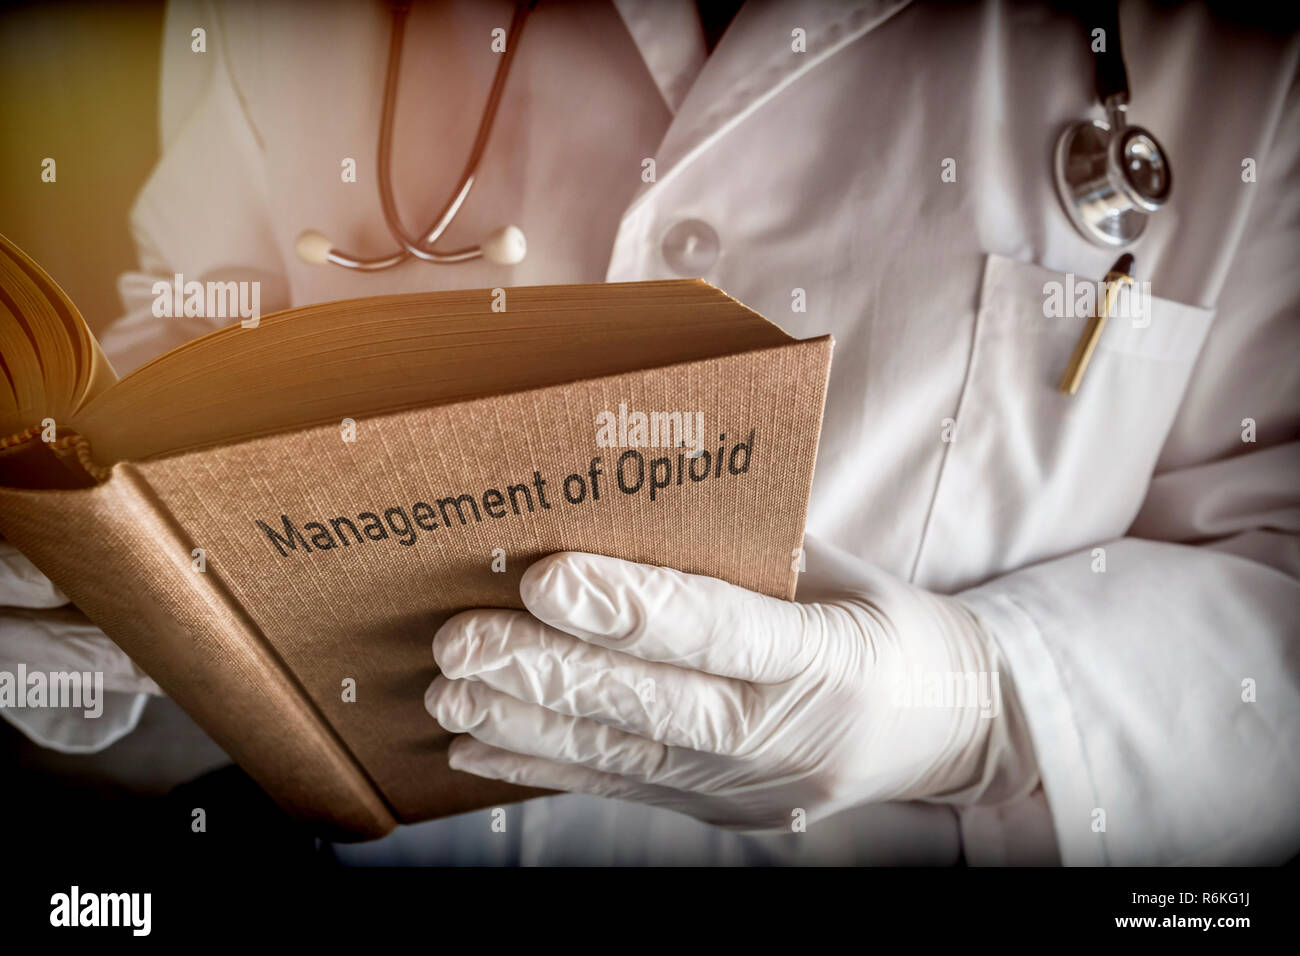 Medico detiene il libro sulla gestione di oppioide, immagine concettuale Foto Stock